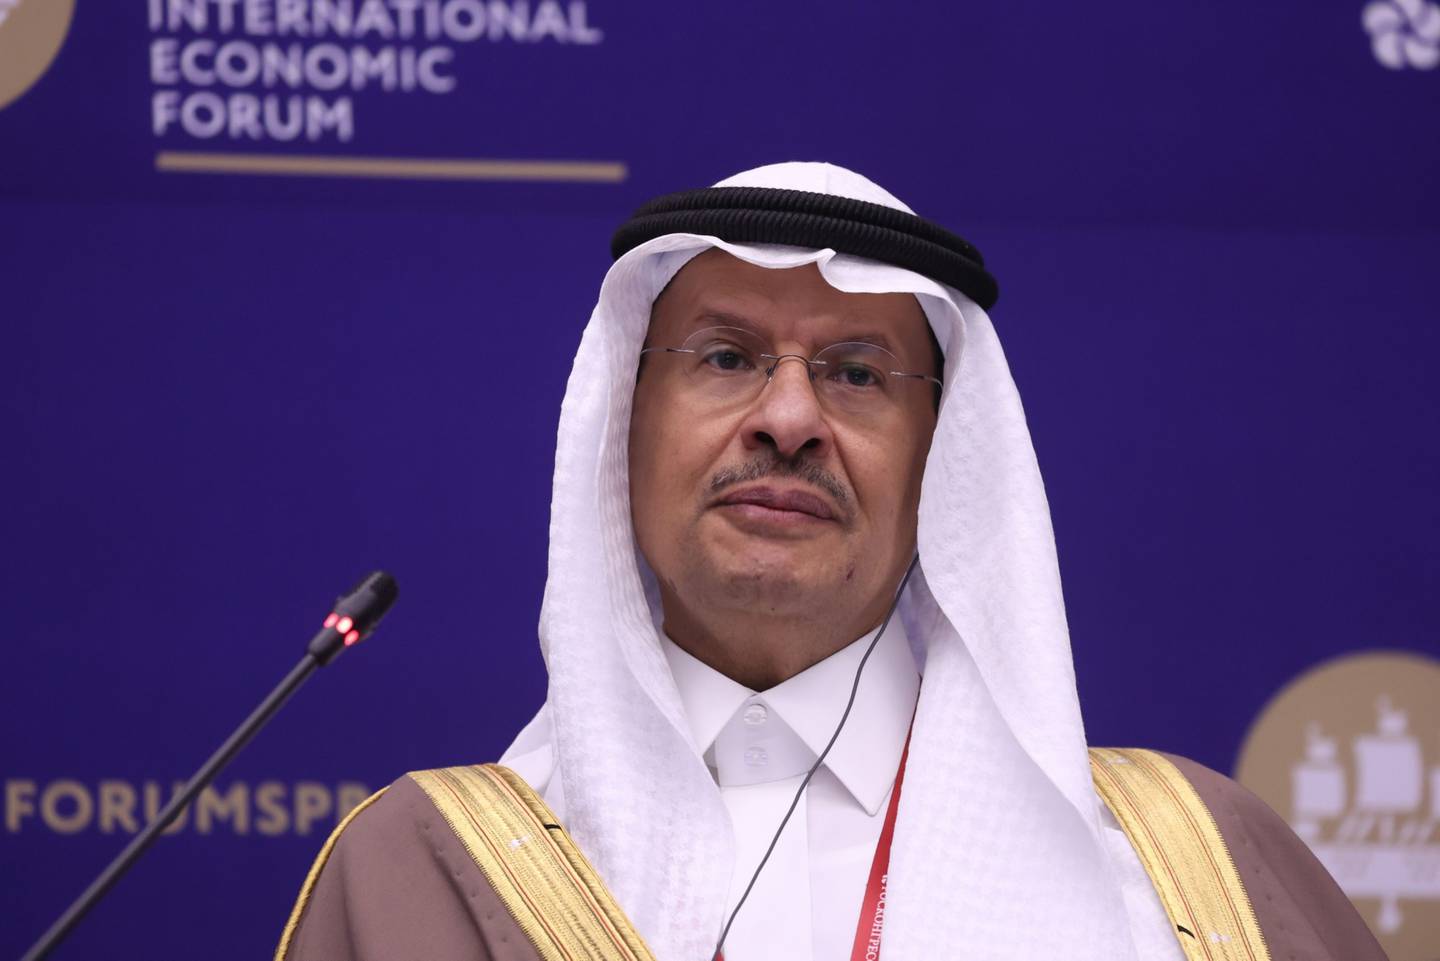 Abdulaziz bin Salman, ministro de energía de Arabia Saudita, durante una sesión de panel en el segundo día del Foro Económico Internacional de San Petersburgo (SPIEF) en San Petersburgo, Rusia, el jueves 3 de junio de 2021.